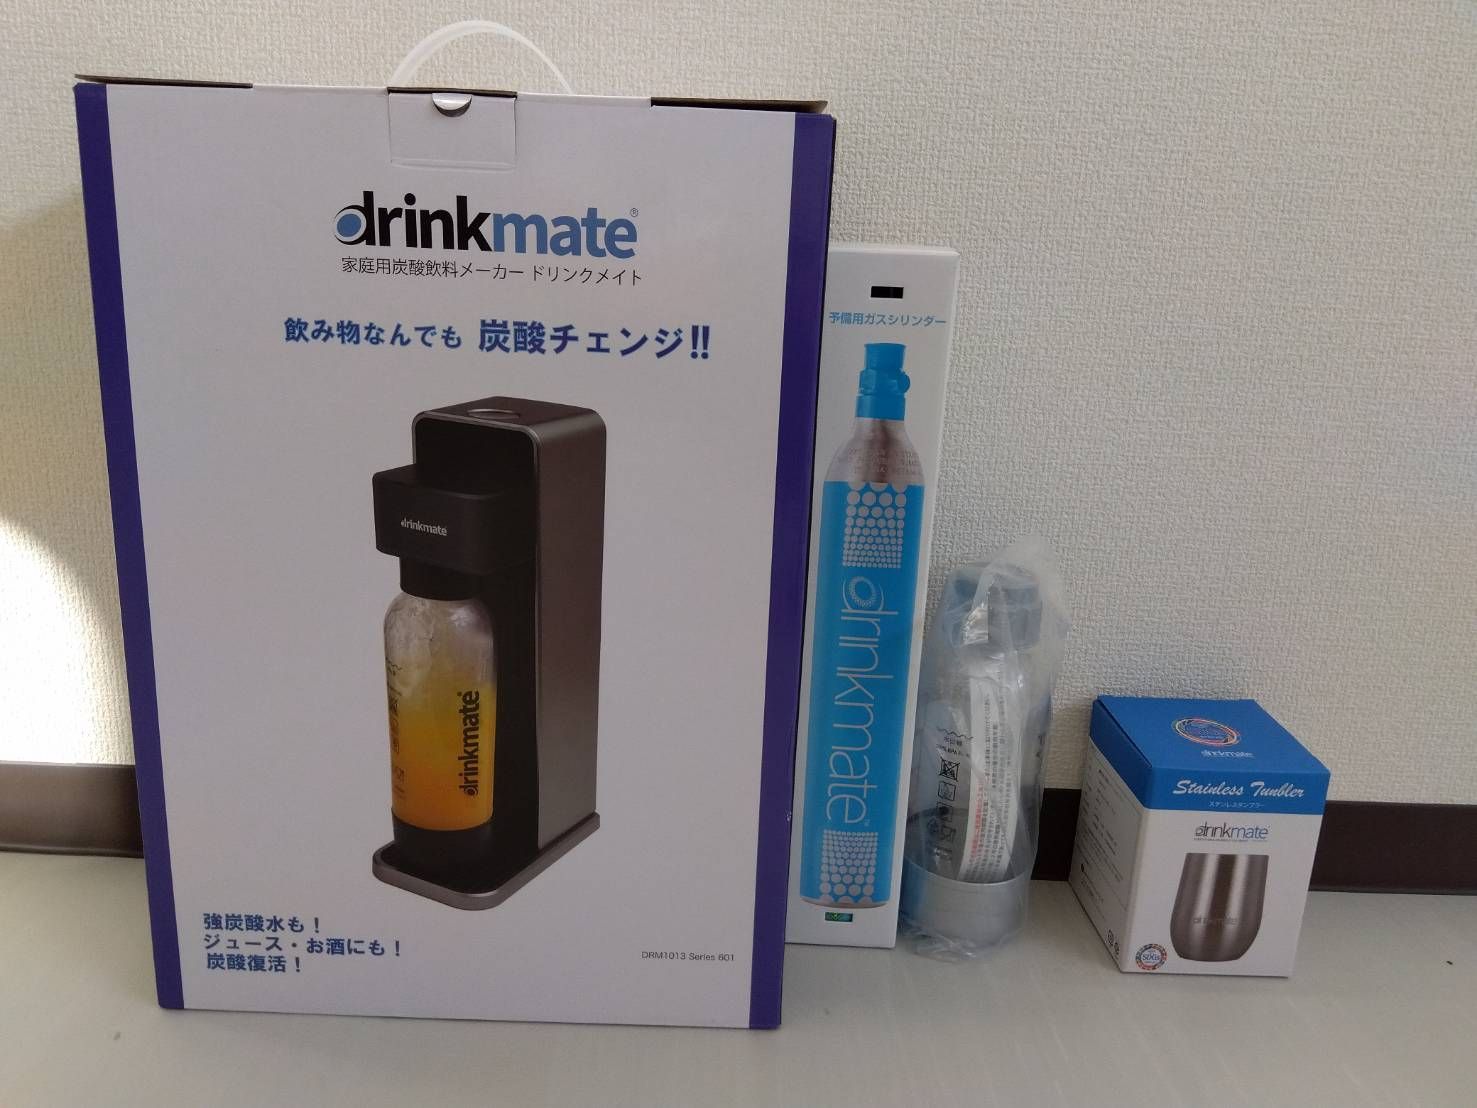 Drinkmate 炭酸メーカー ドリンクメイト 601 DRM1013 - コーヒーメーカー